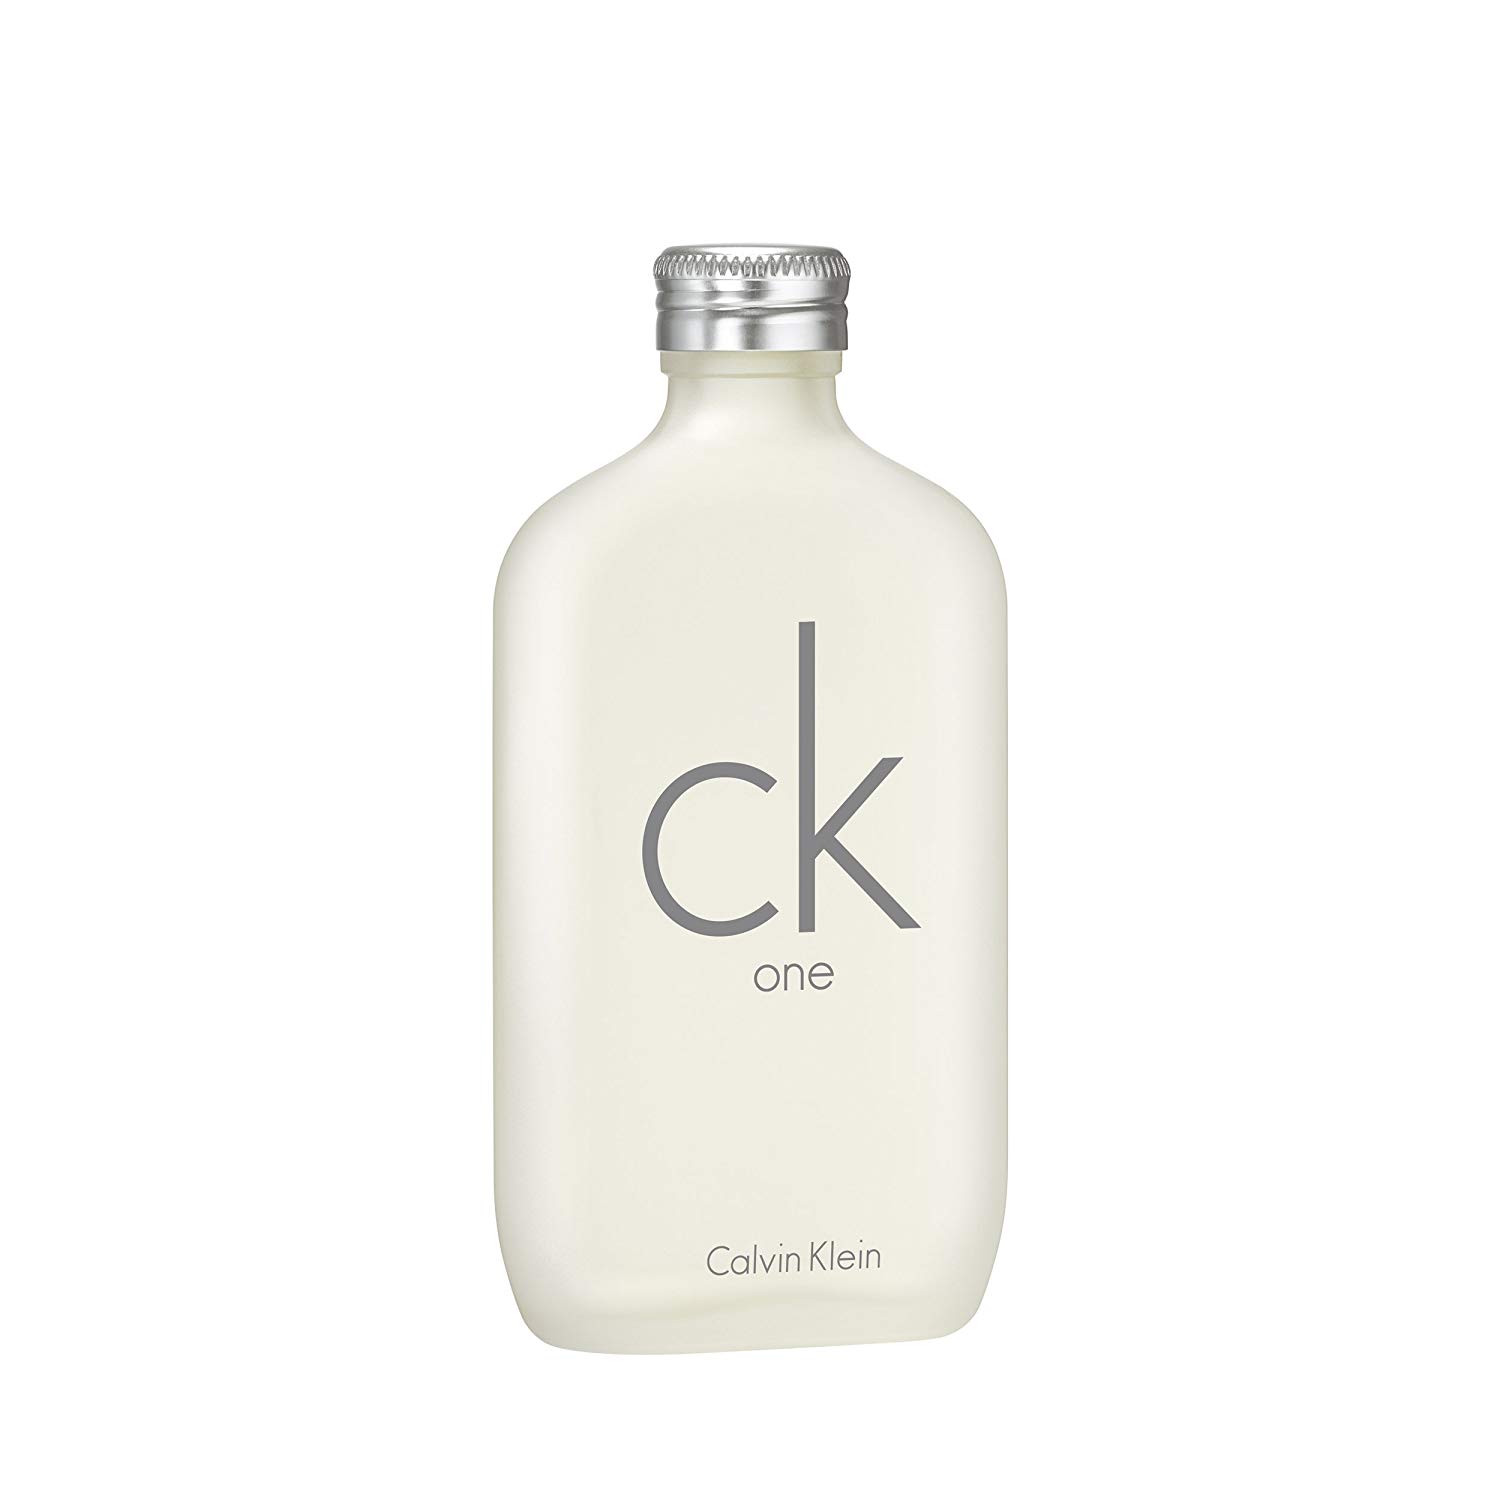 CK One 200ml EDT by Calvin Klein for Men & Women| NextCrush.in